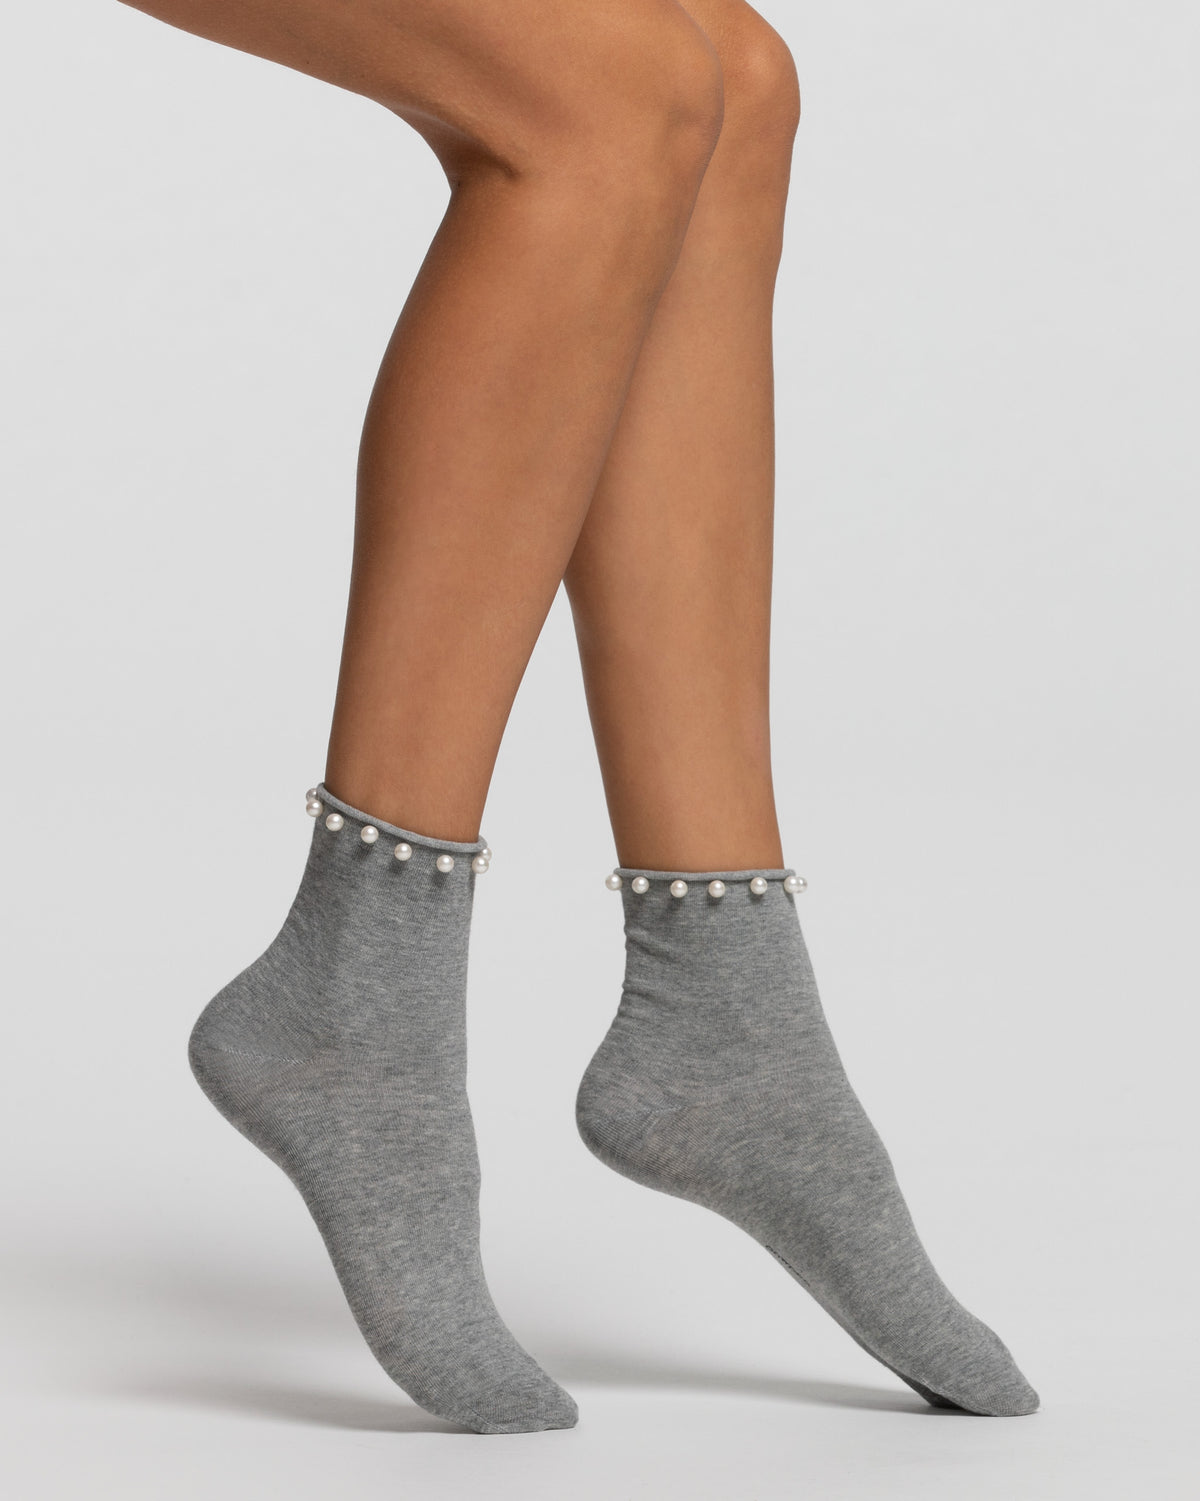 Perlita socks 